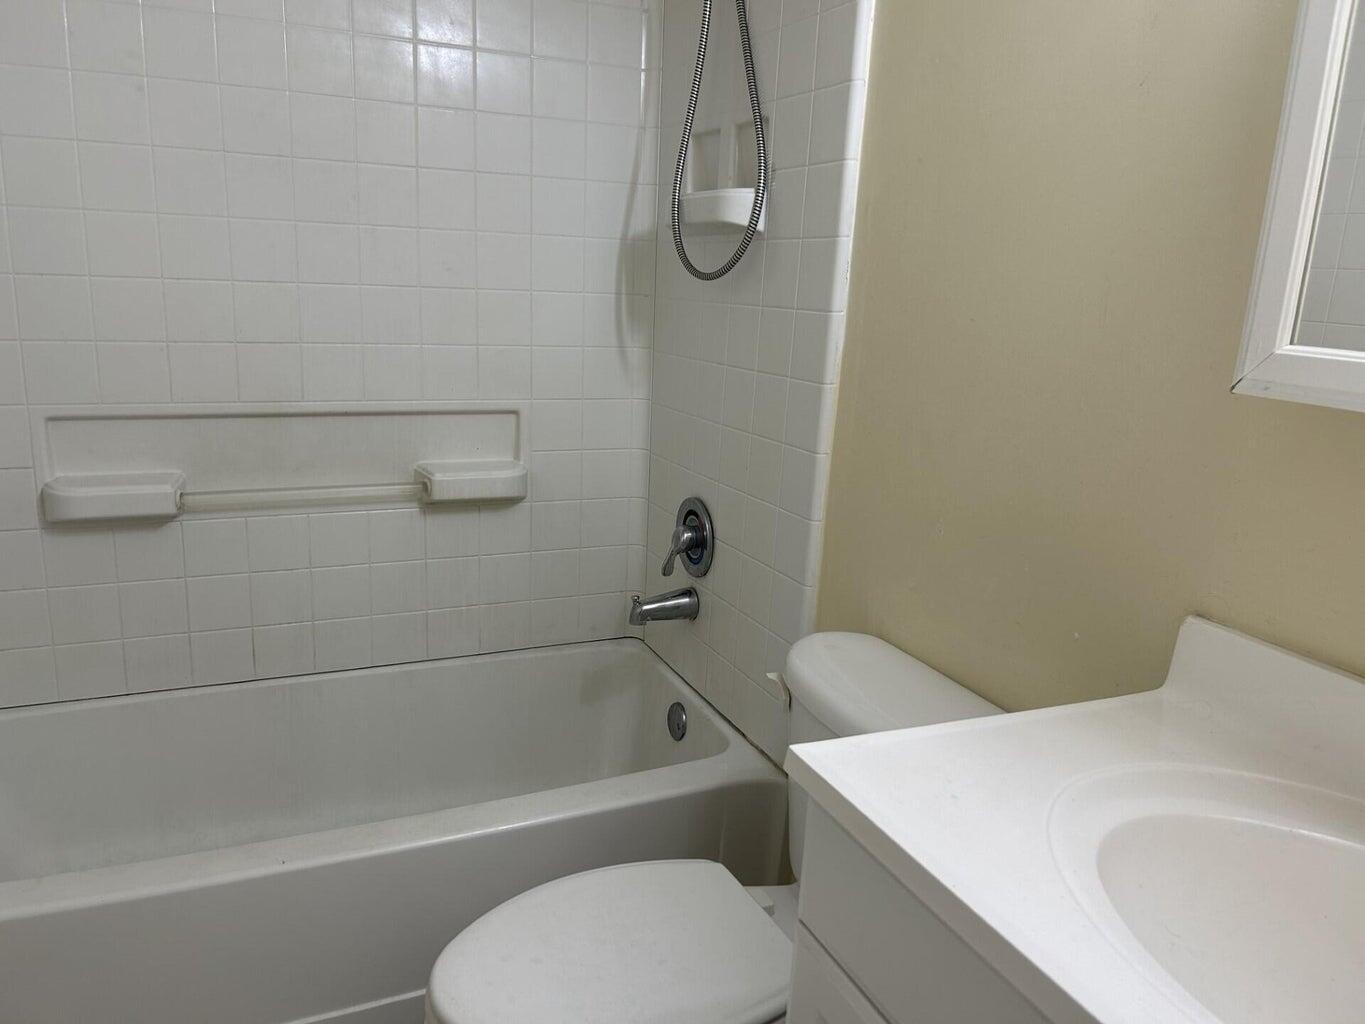 a bathroom with a toilet and a bath tub